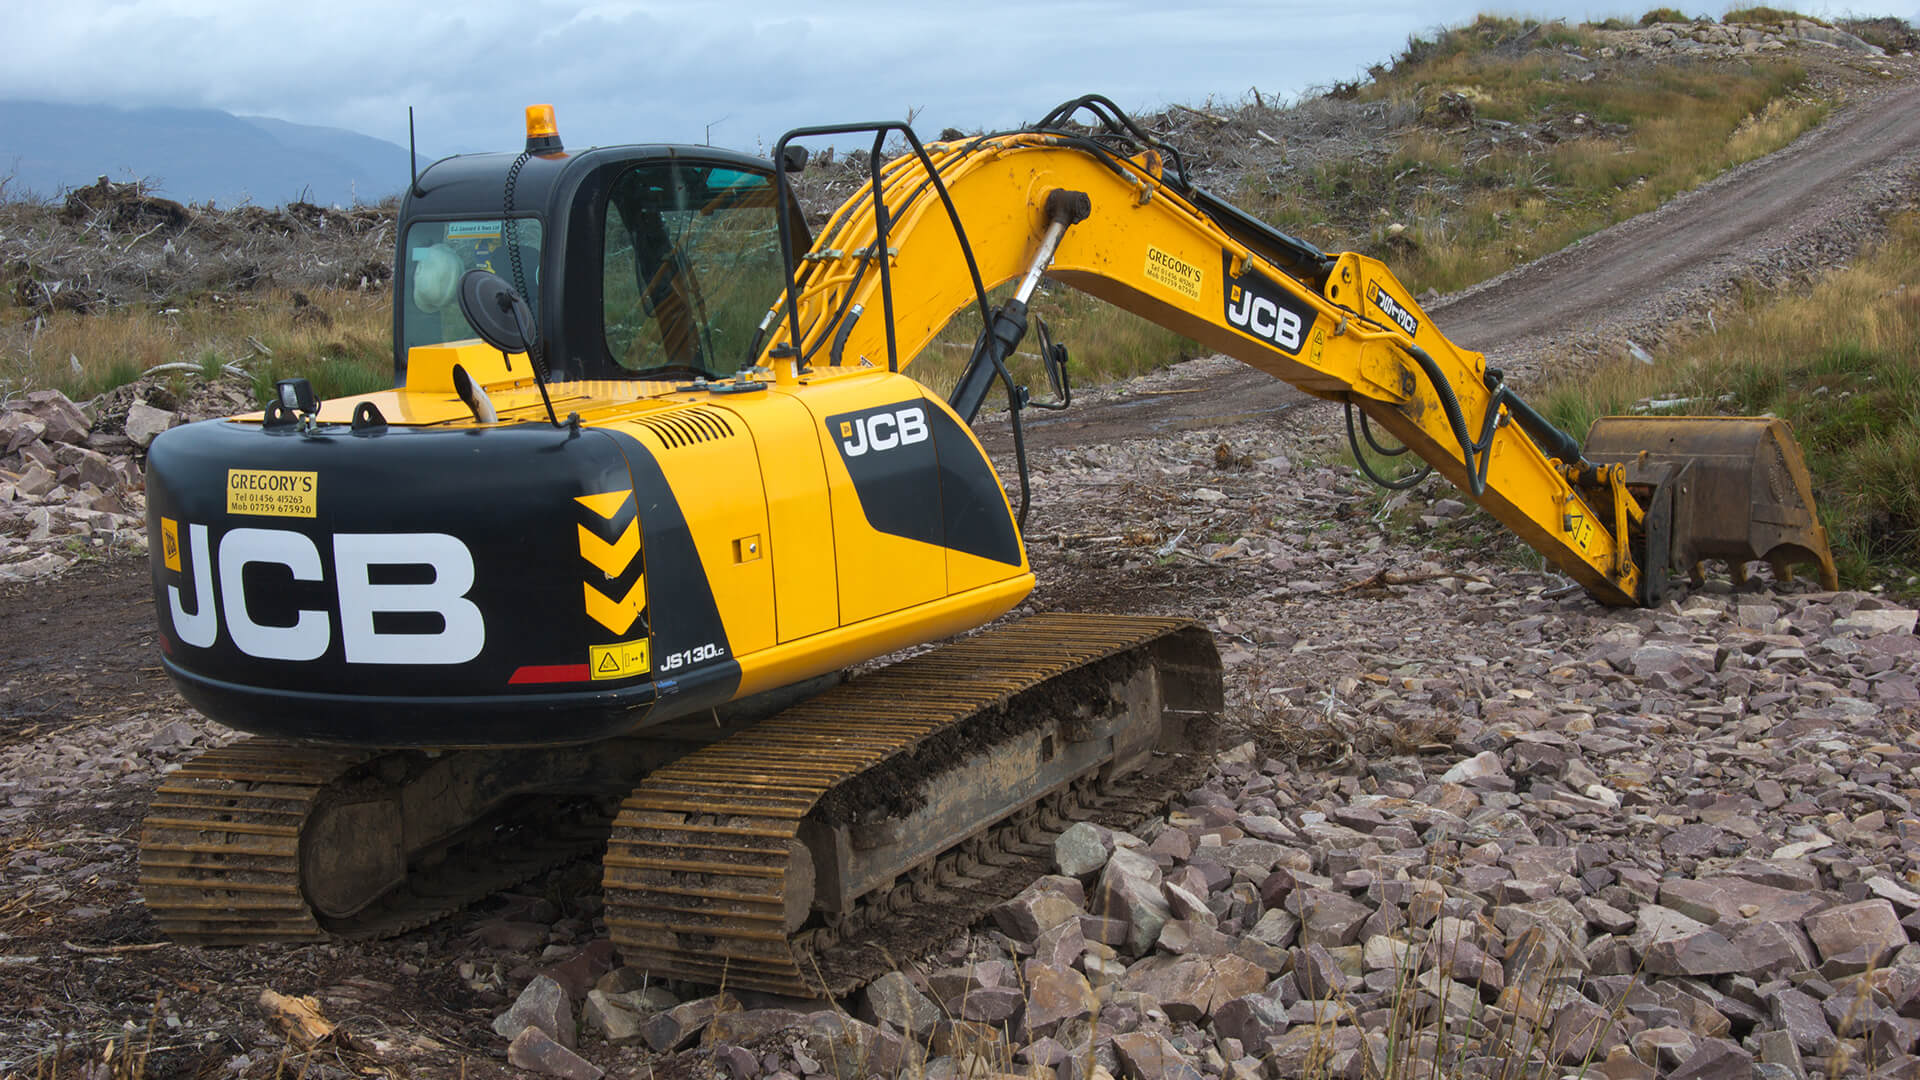 tracked excavator mini excavators crawler excavators with maximum digging depth